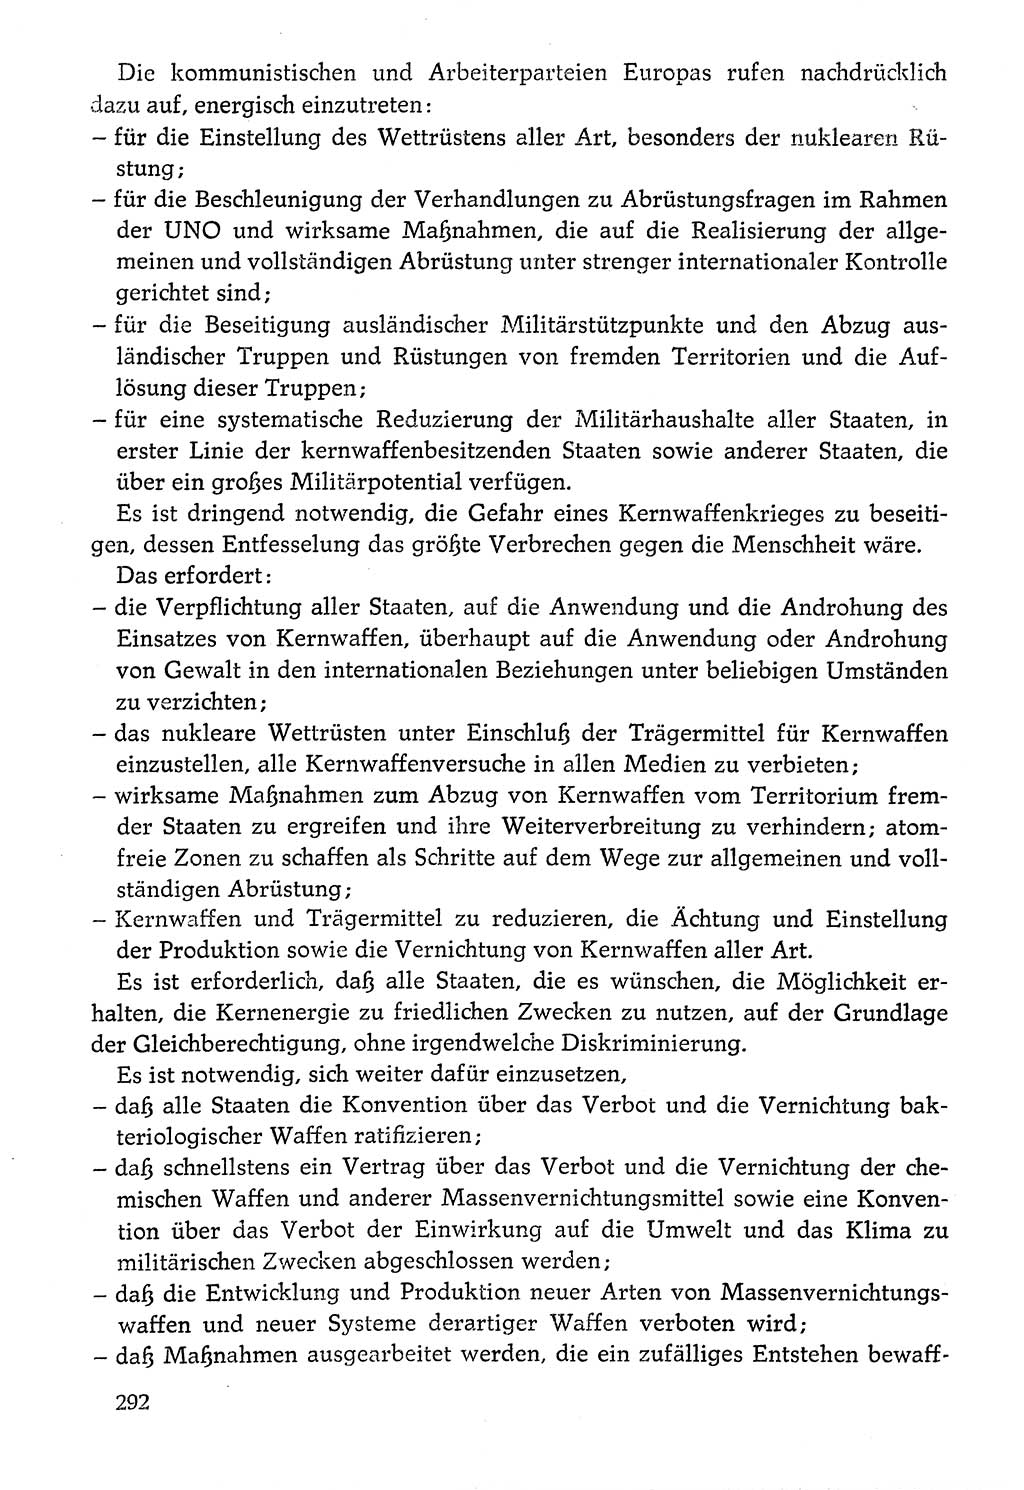 Dokumente der Sozialistischen Einheitspartei Deutschlands (SED) [Deutsche Demokratische Republik (DDR)] 1976-1977, Seite 292 (Dok. SED DDR 1976-1977, S. 292)